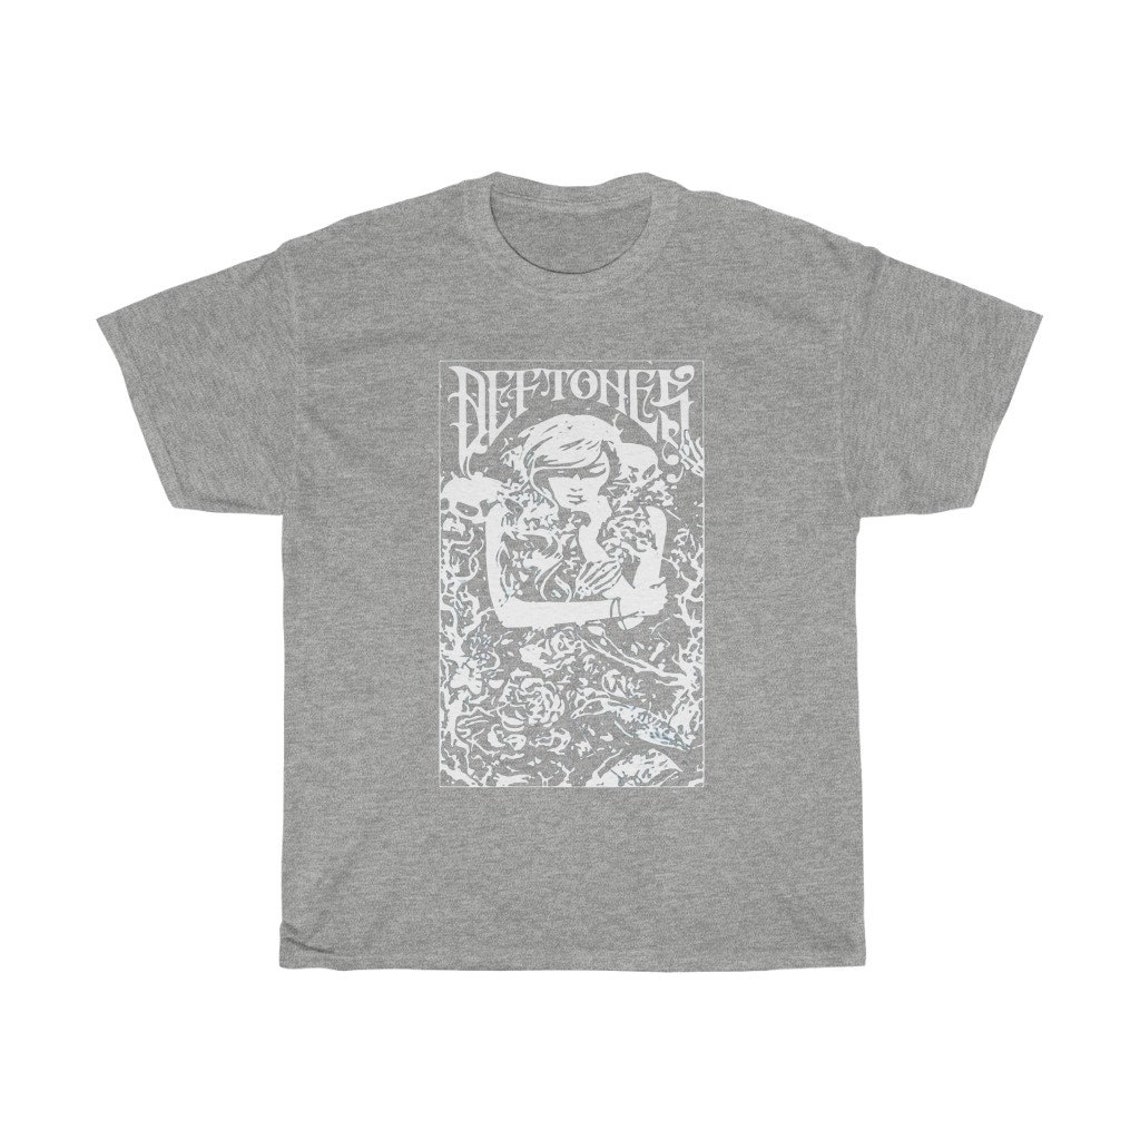 Deftones TShirt Shirt Tee | Etsy